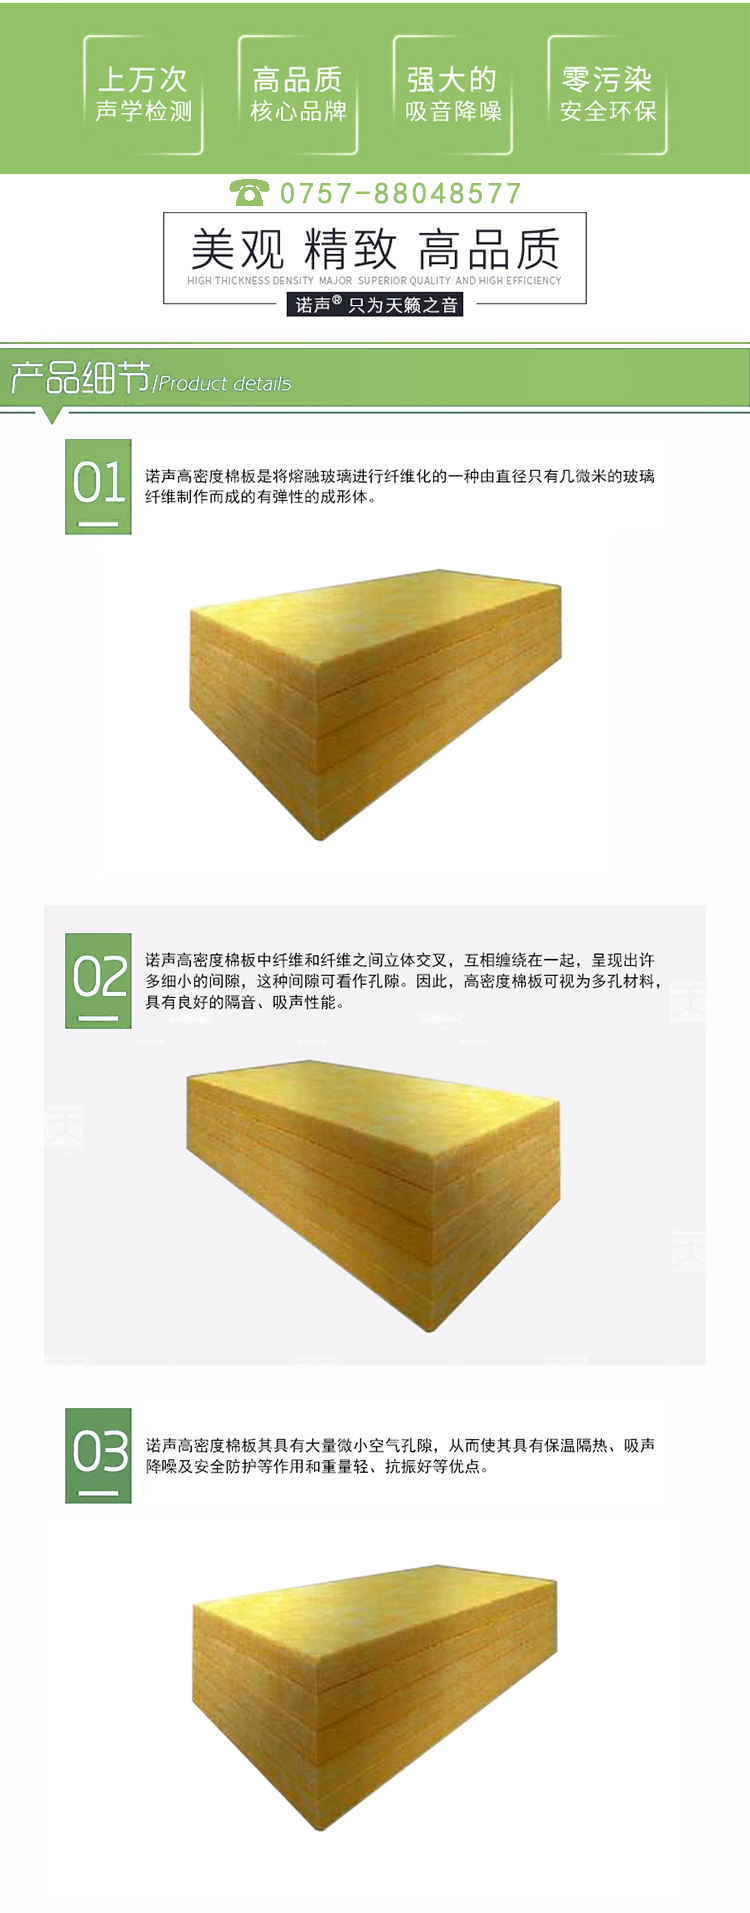 48kg/m³高密度棉板产品优势